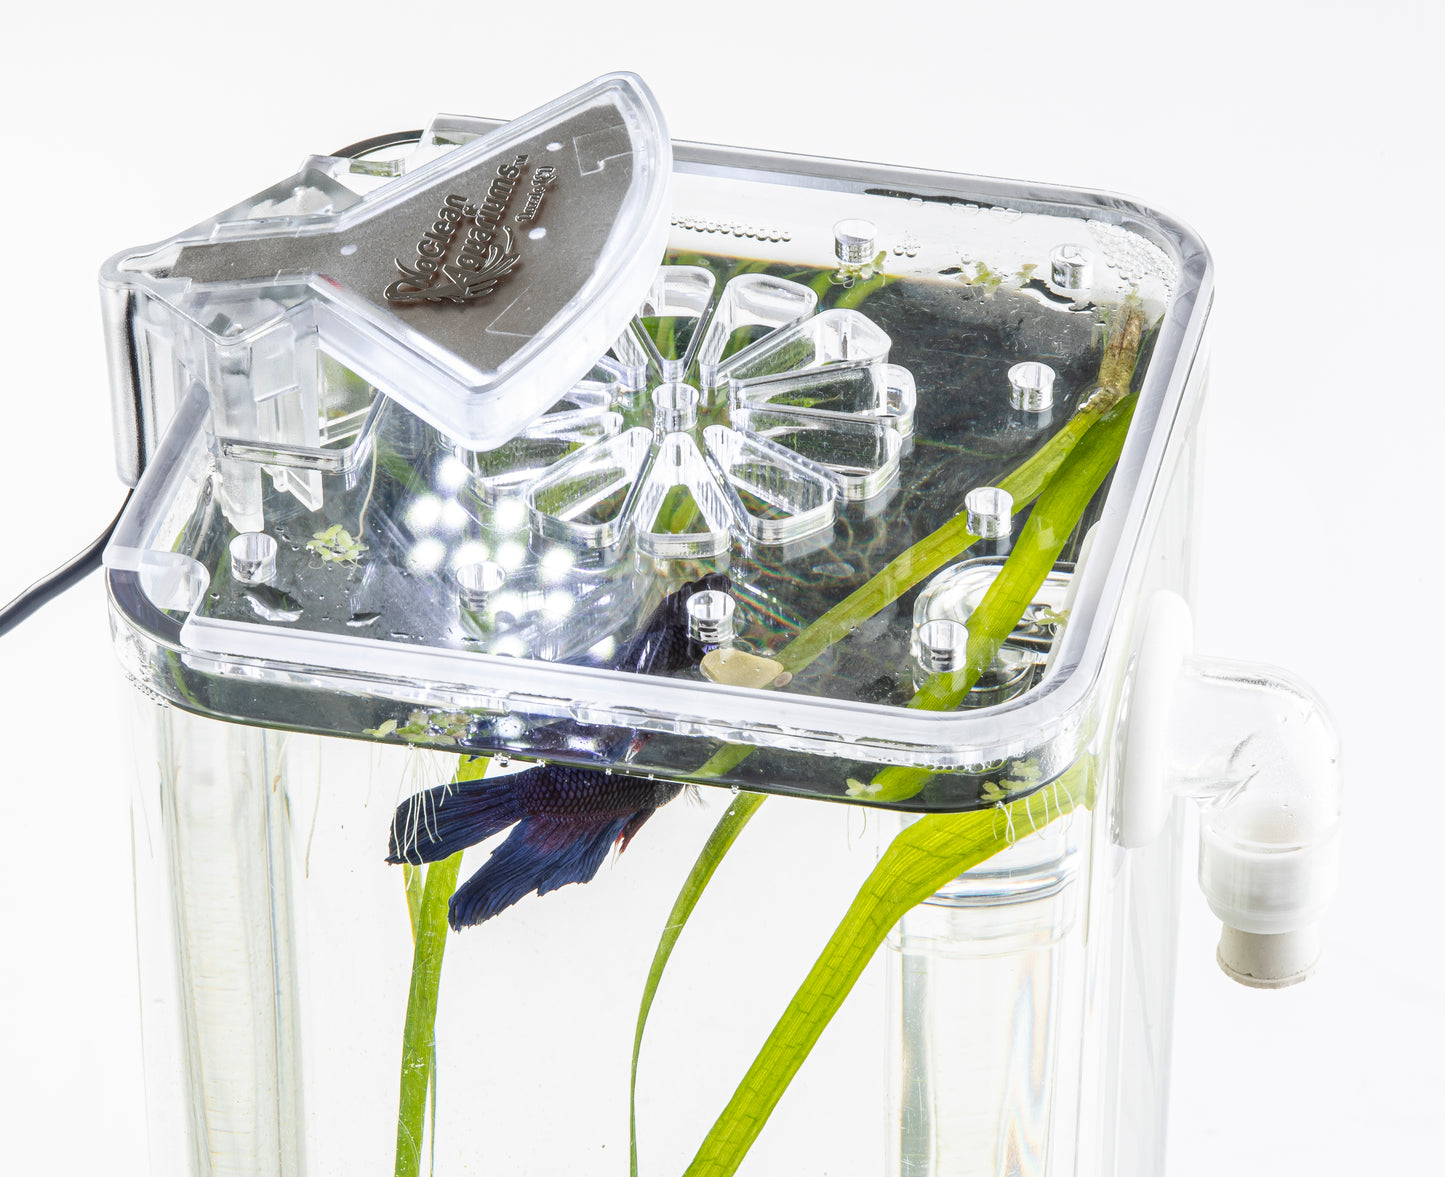 "Lotus" LID for 1 Gallon Self-Cleaning Aquarium